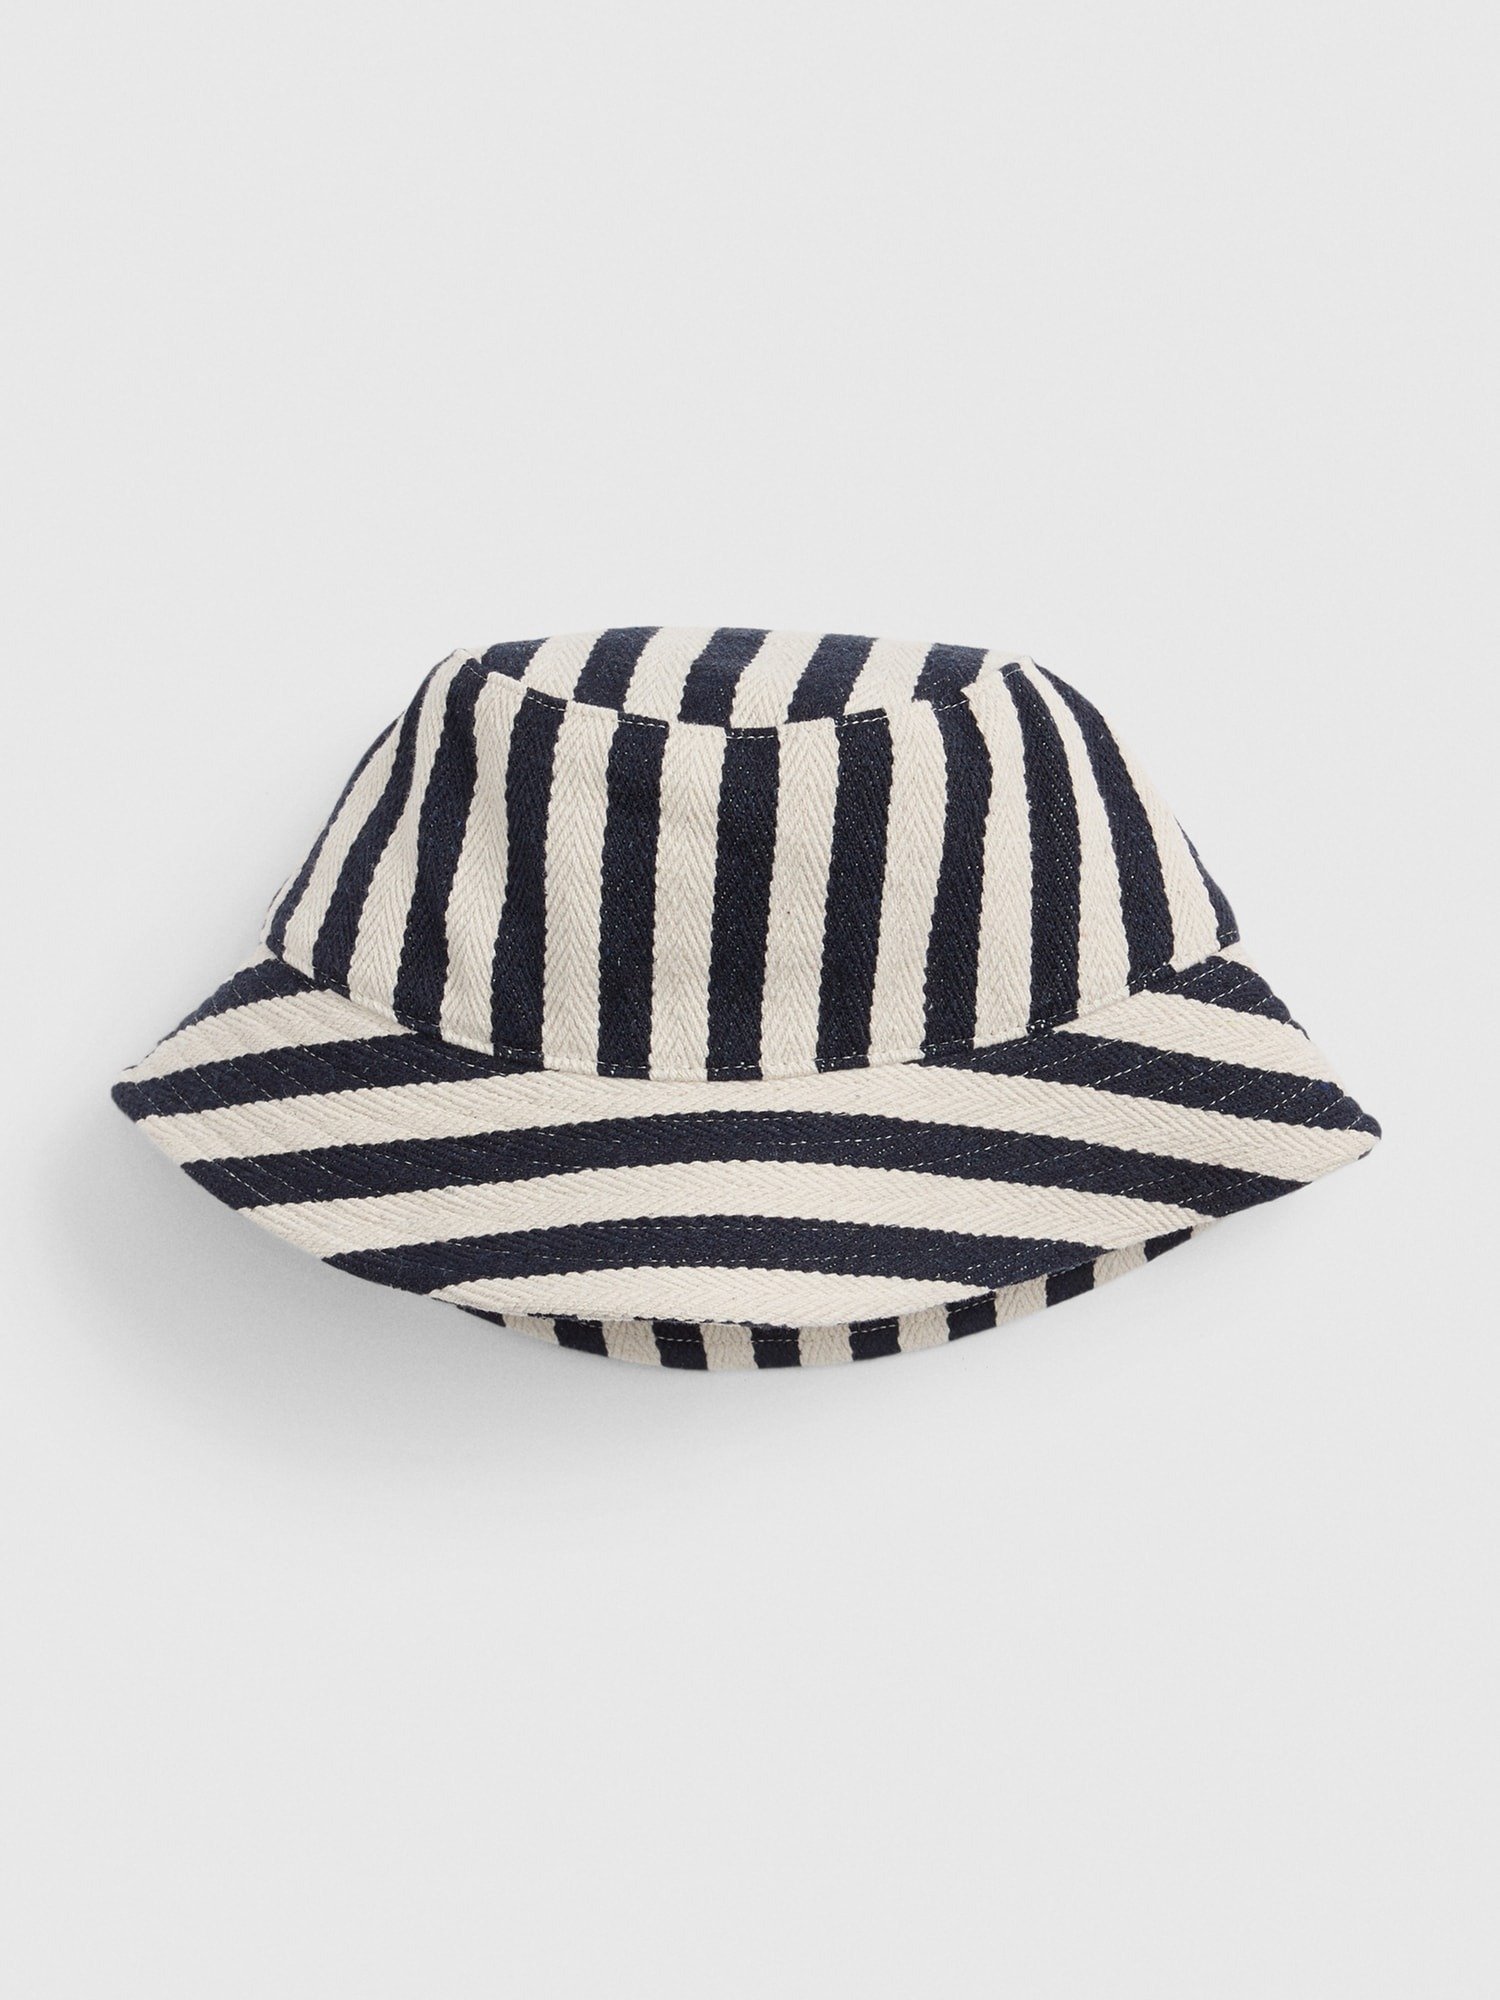 Balıkçı Şapka product image